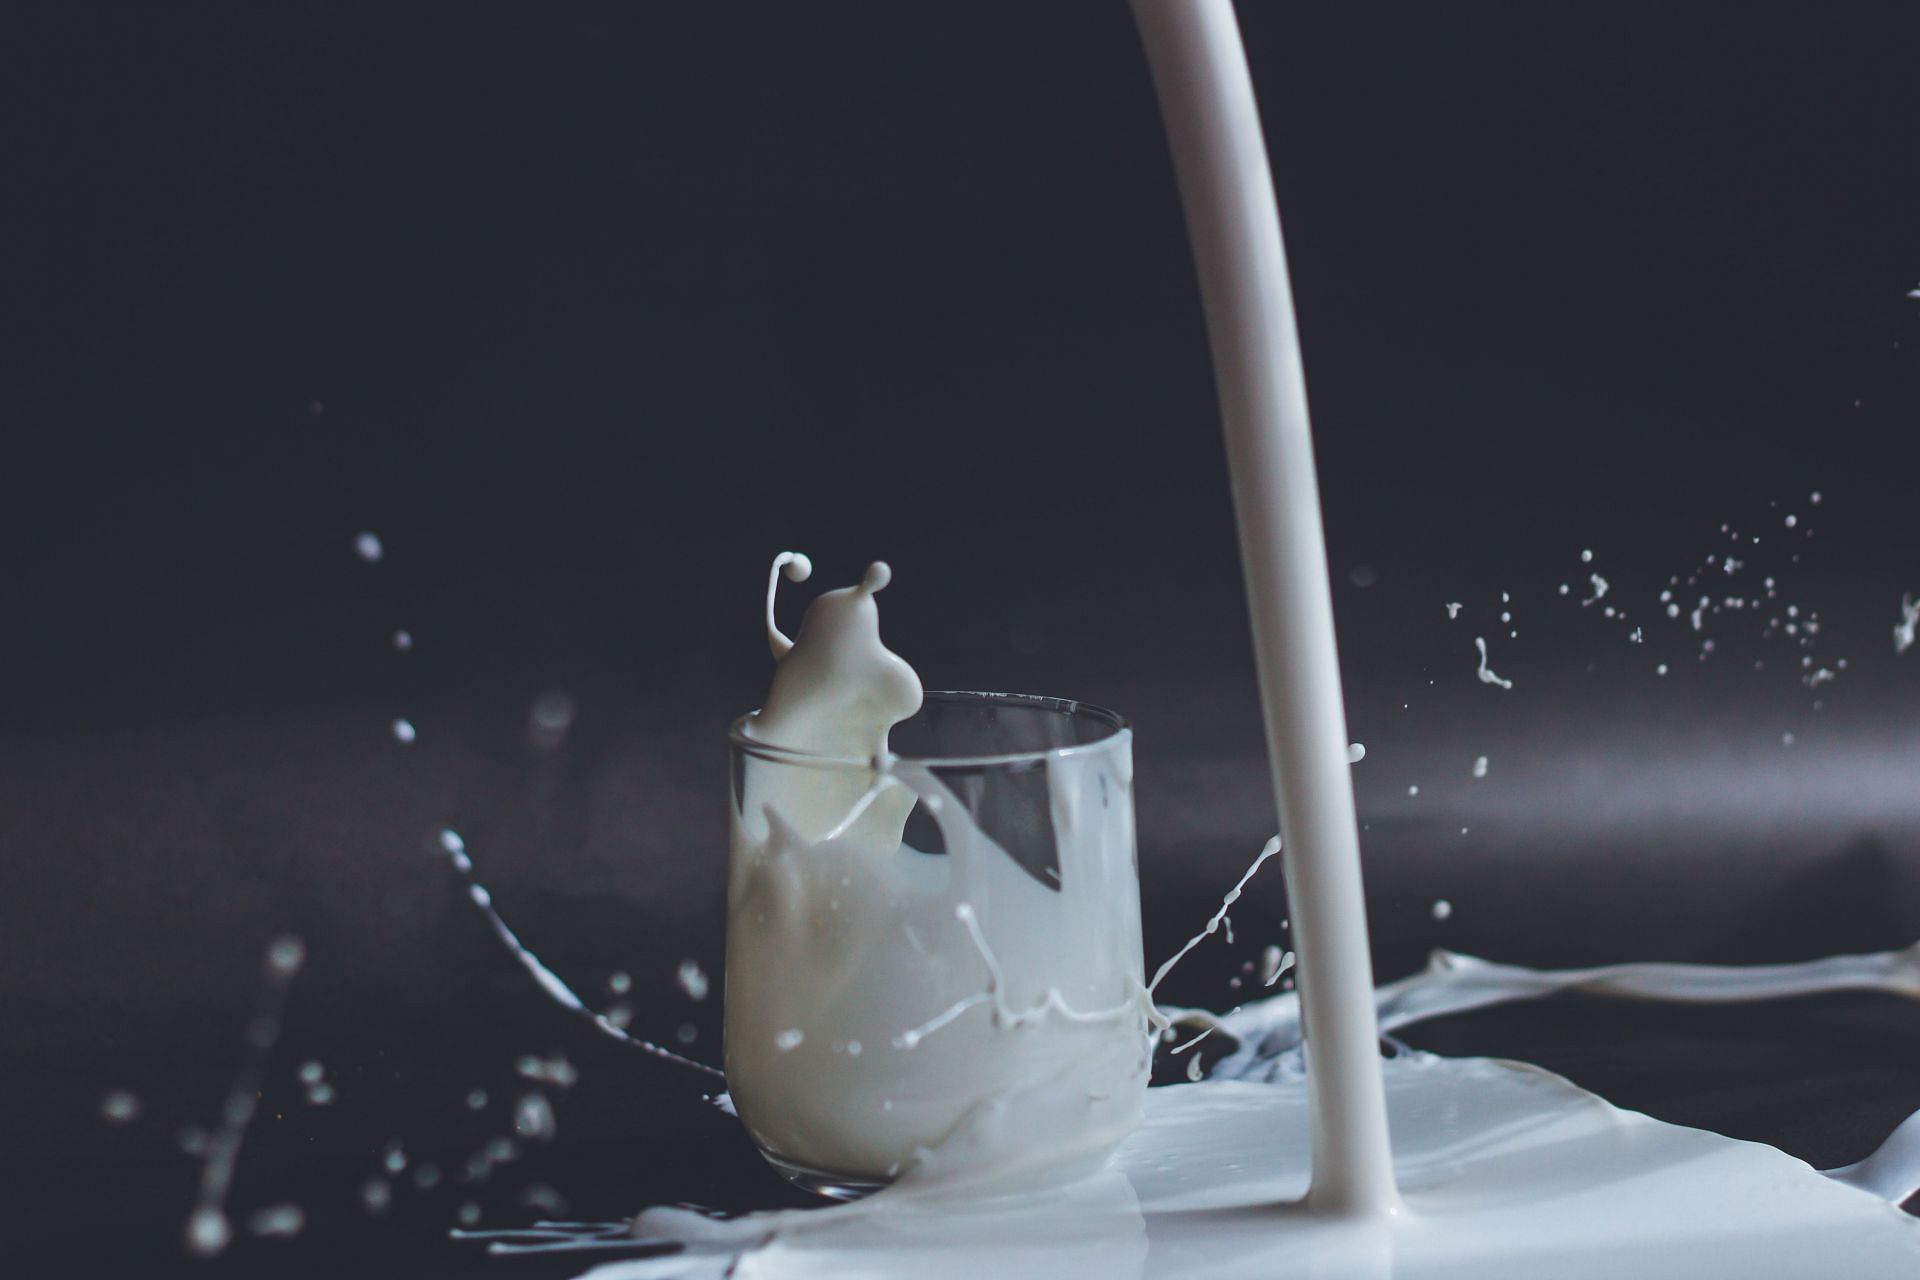 Milk is a versatile food. (Image Via Unsplash/Anita Jankovic)